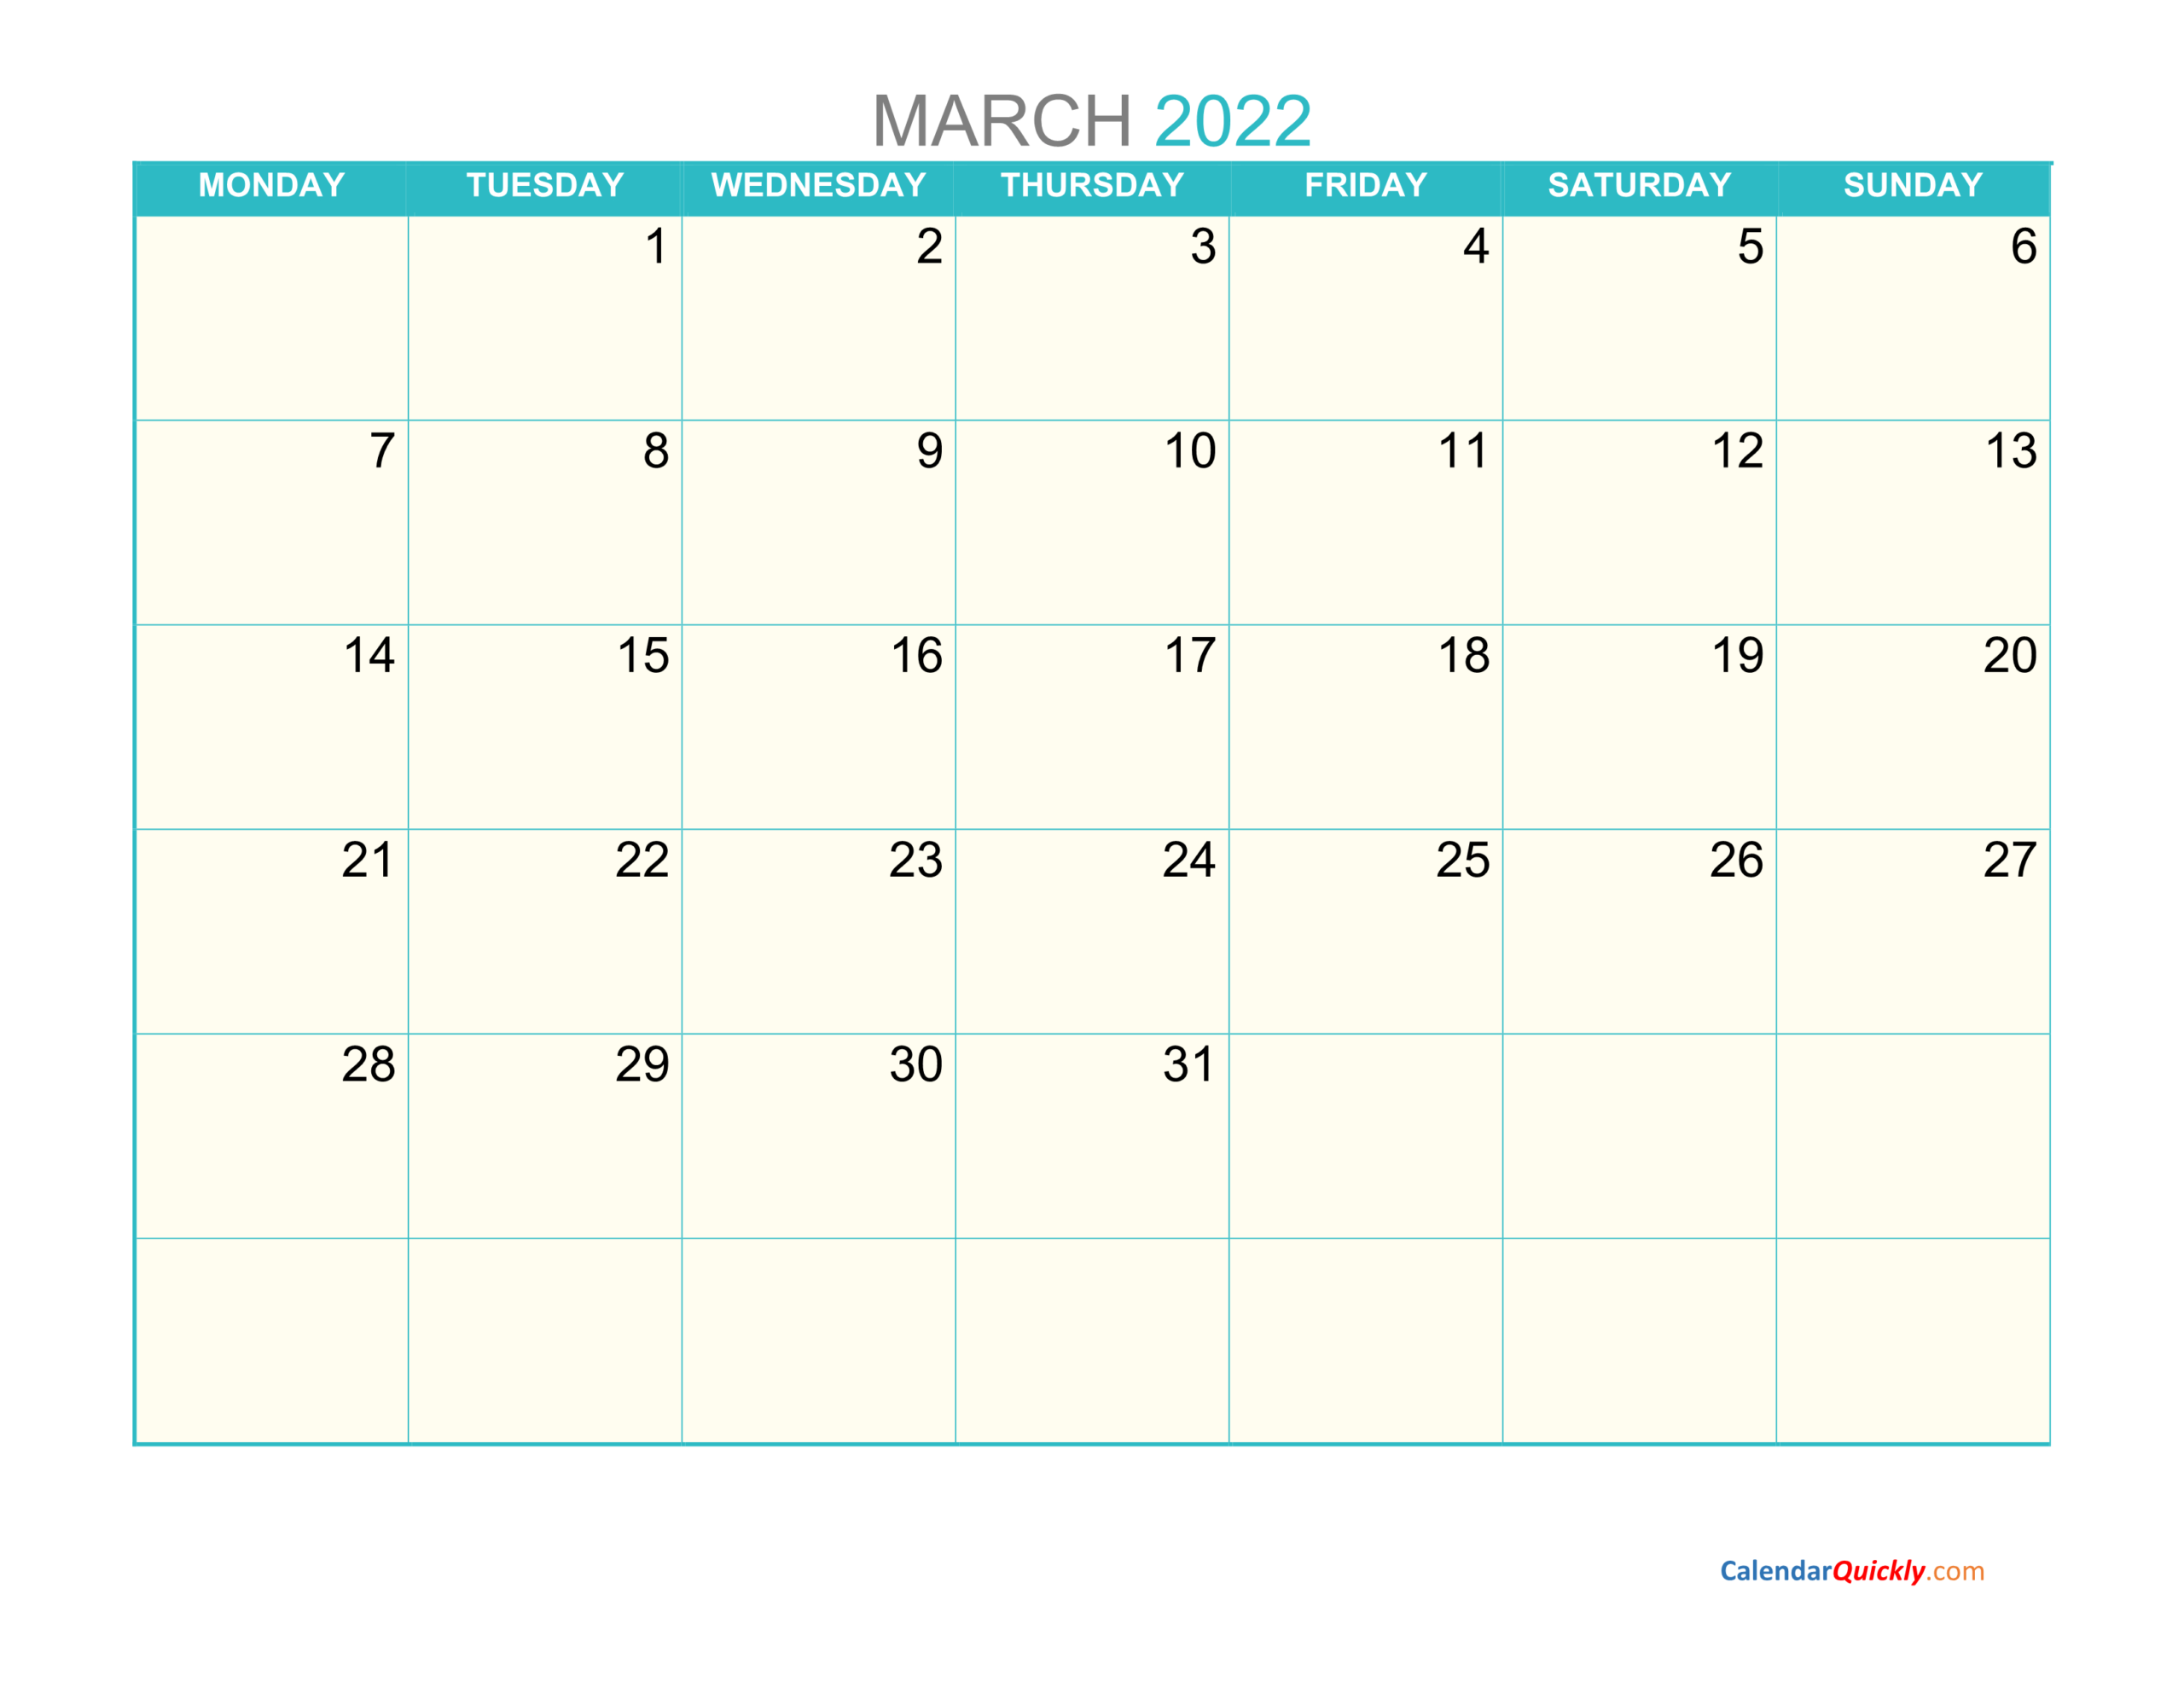 Get April 8 2022 Calendar